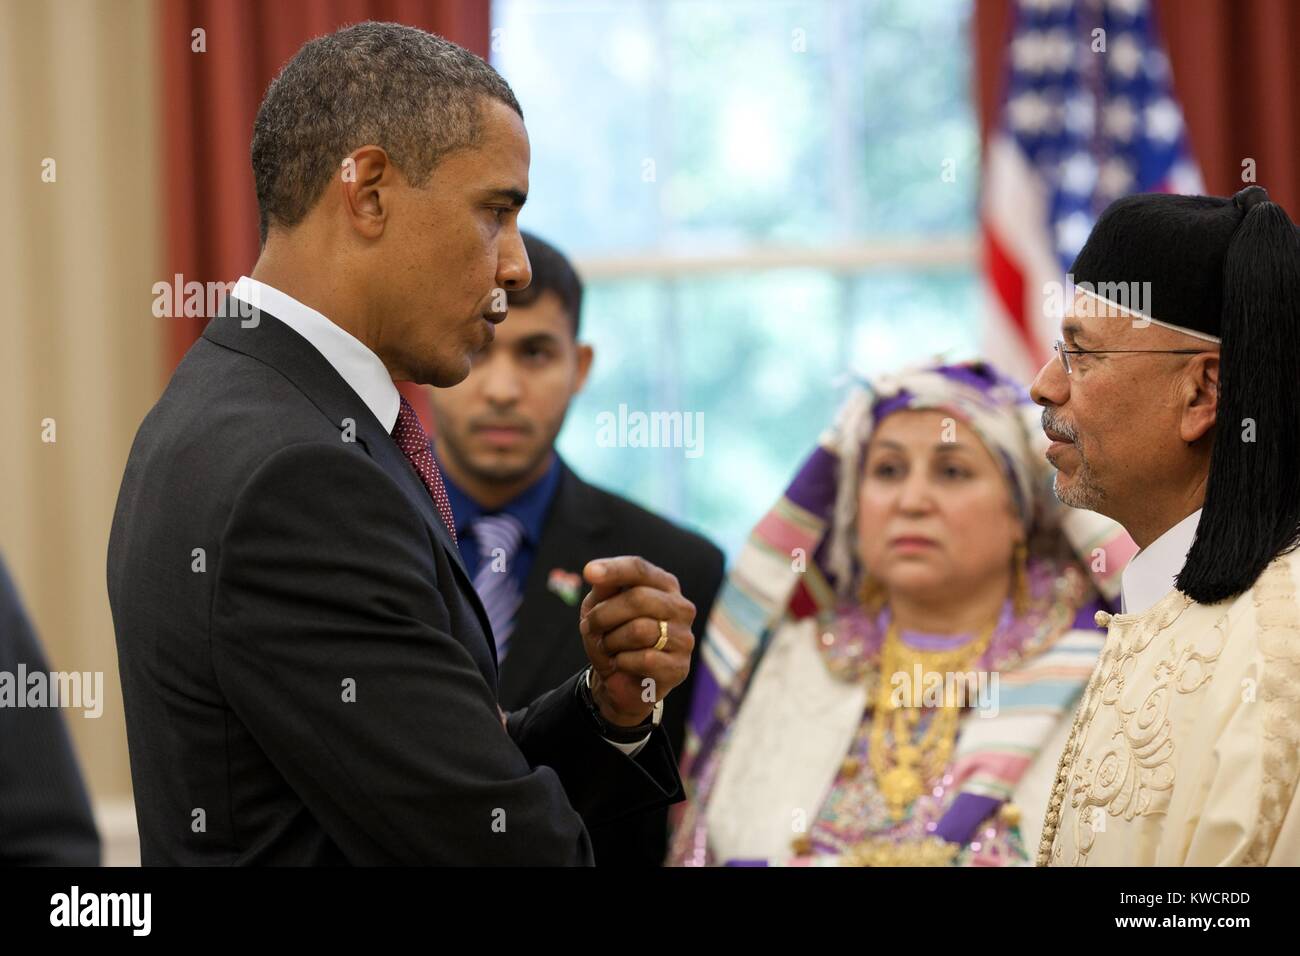 Us-Präsident Barack Obama Gespräche mit dem libyschen Botschafter Ali Suleiman Aujali und seiner Familie. An den neuen Botschafter Credentialing Ceremony im Oval Office, Sept. 9, 2011 (BSLOC 2015 3 187) Stockfoto